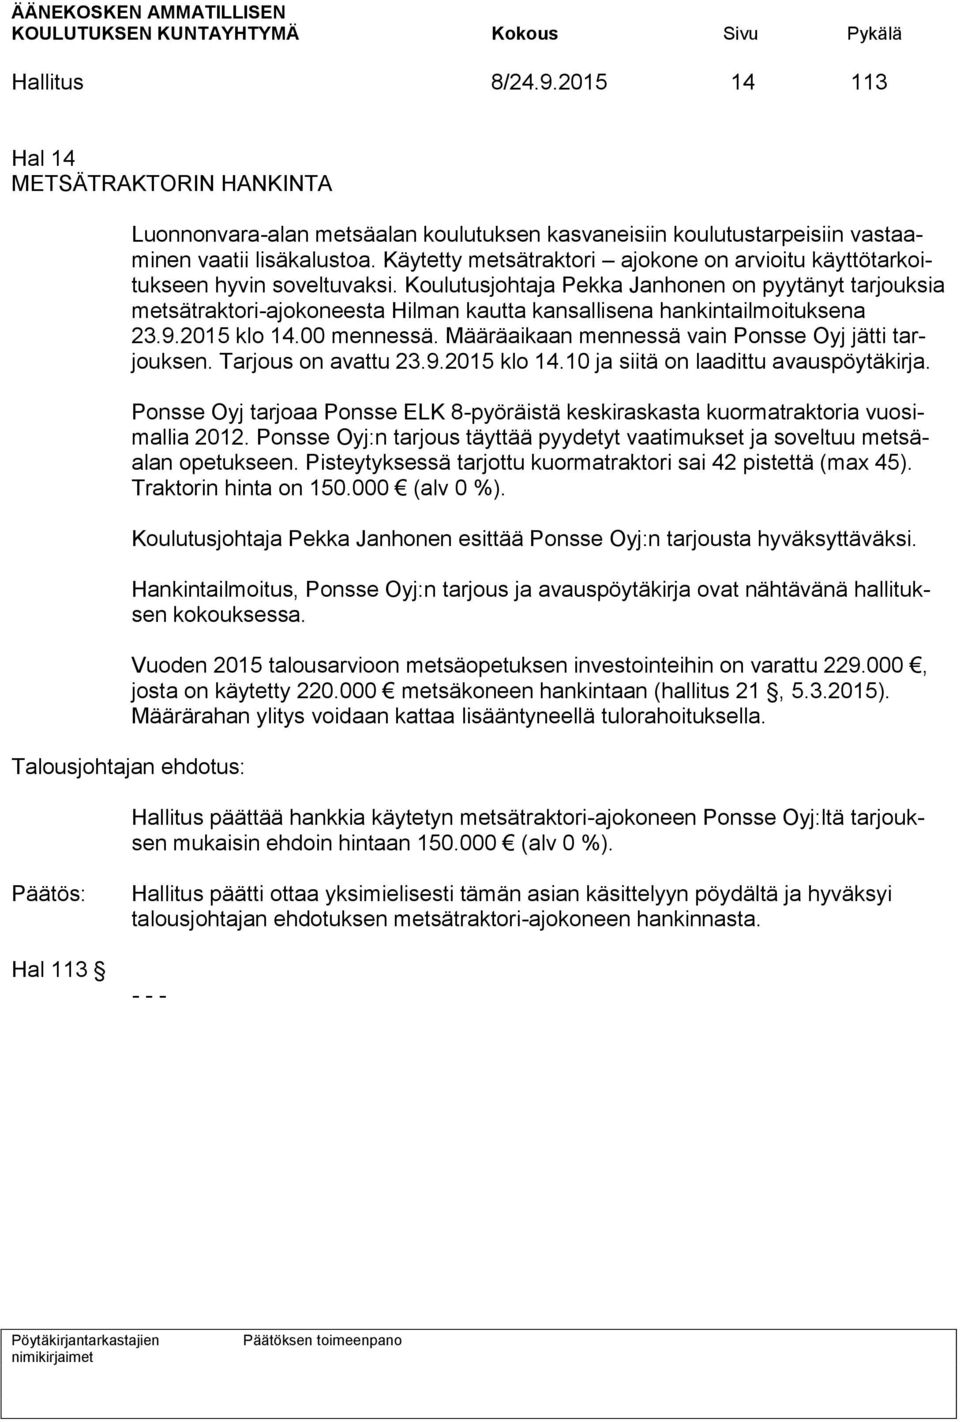 Koulutusjohtaja Pekka Janhonen on pyytänyt tarjouksia metsätraktori-ajokoneesta Hilman kautta kansallisena hankintailmoituksena 23.9.2015 klo 14.00 mennessä.